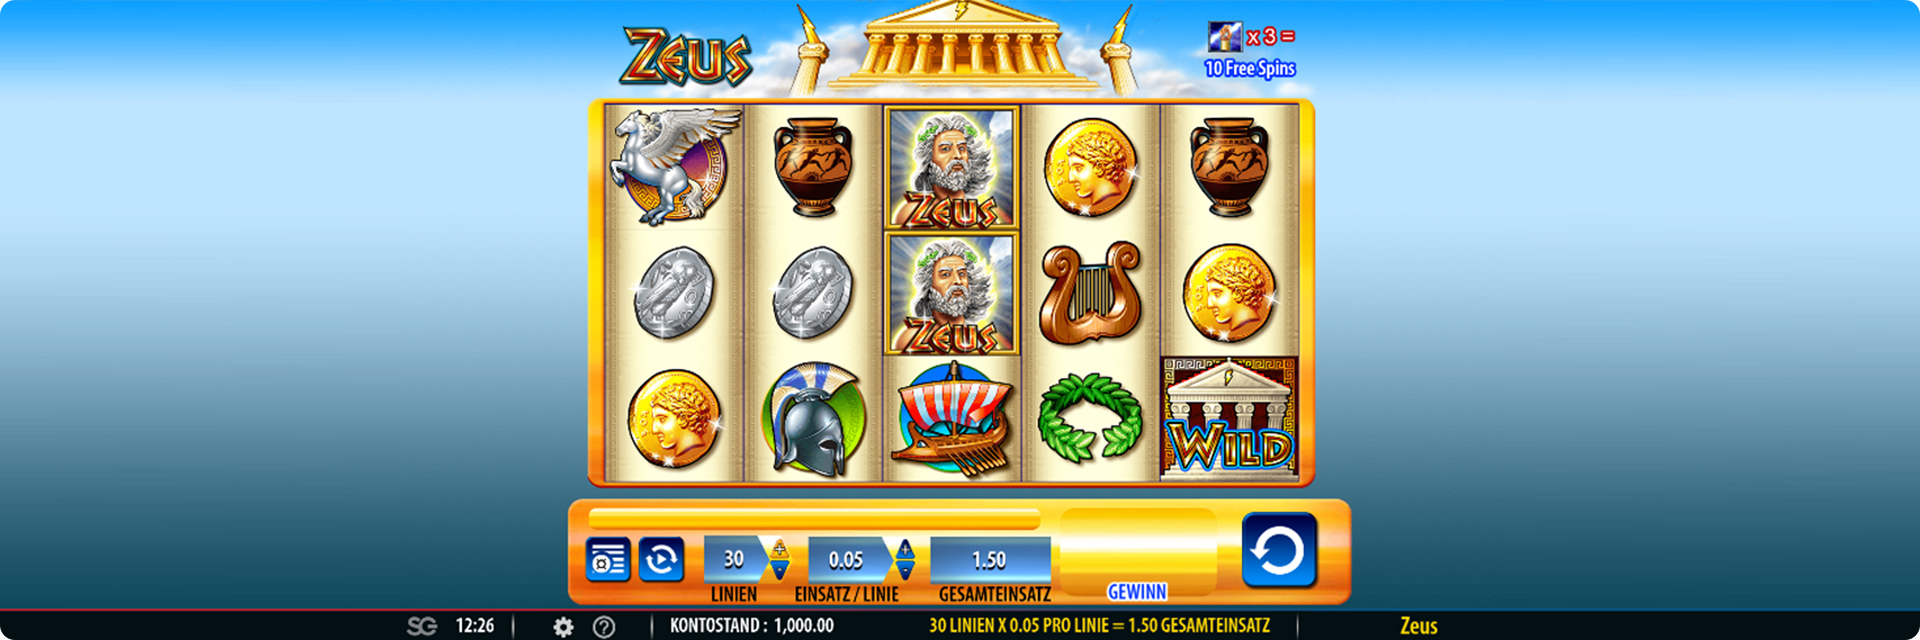 Zeus slot machine.